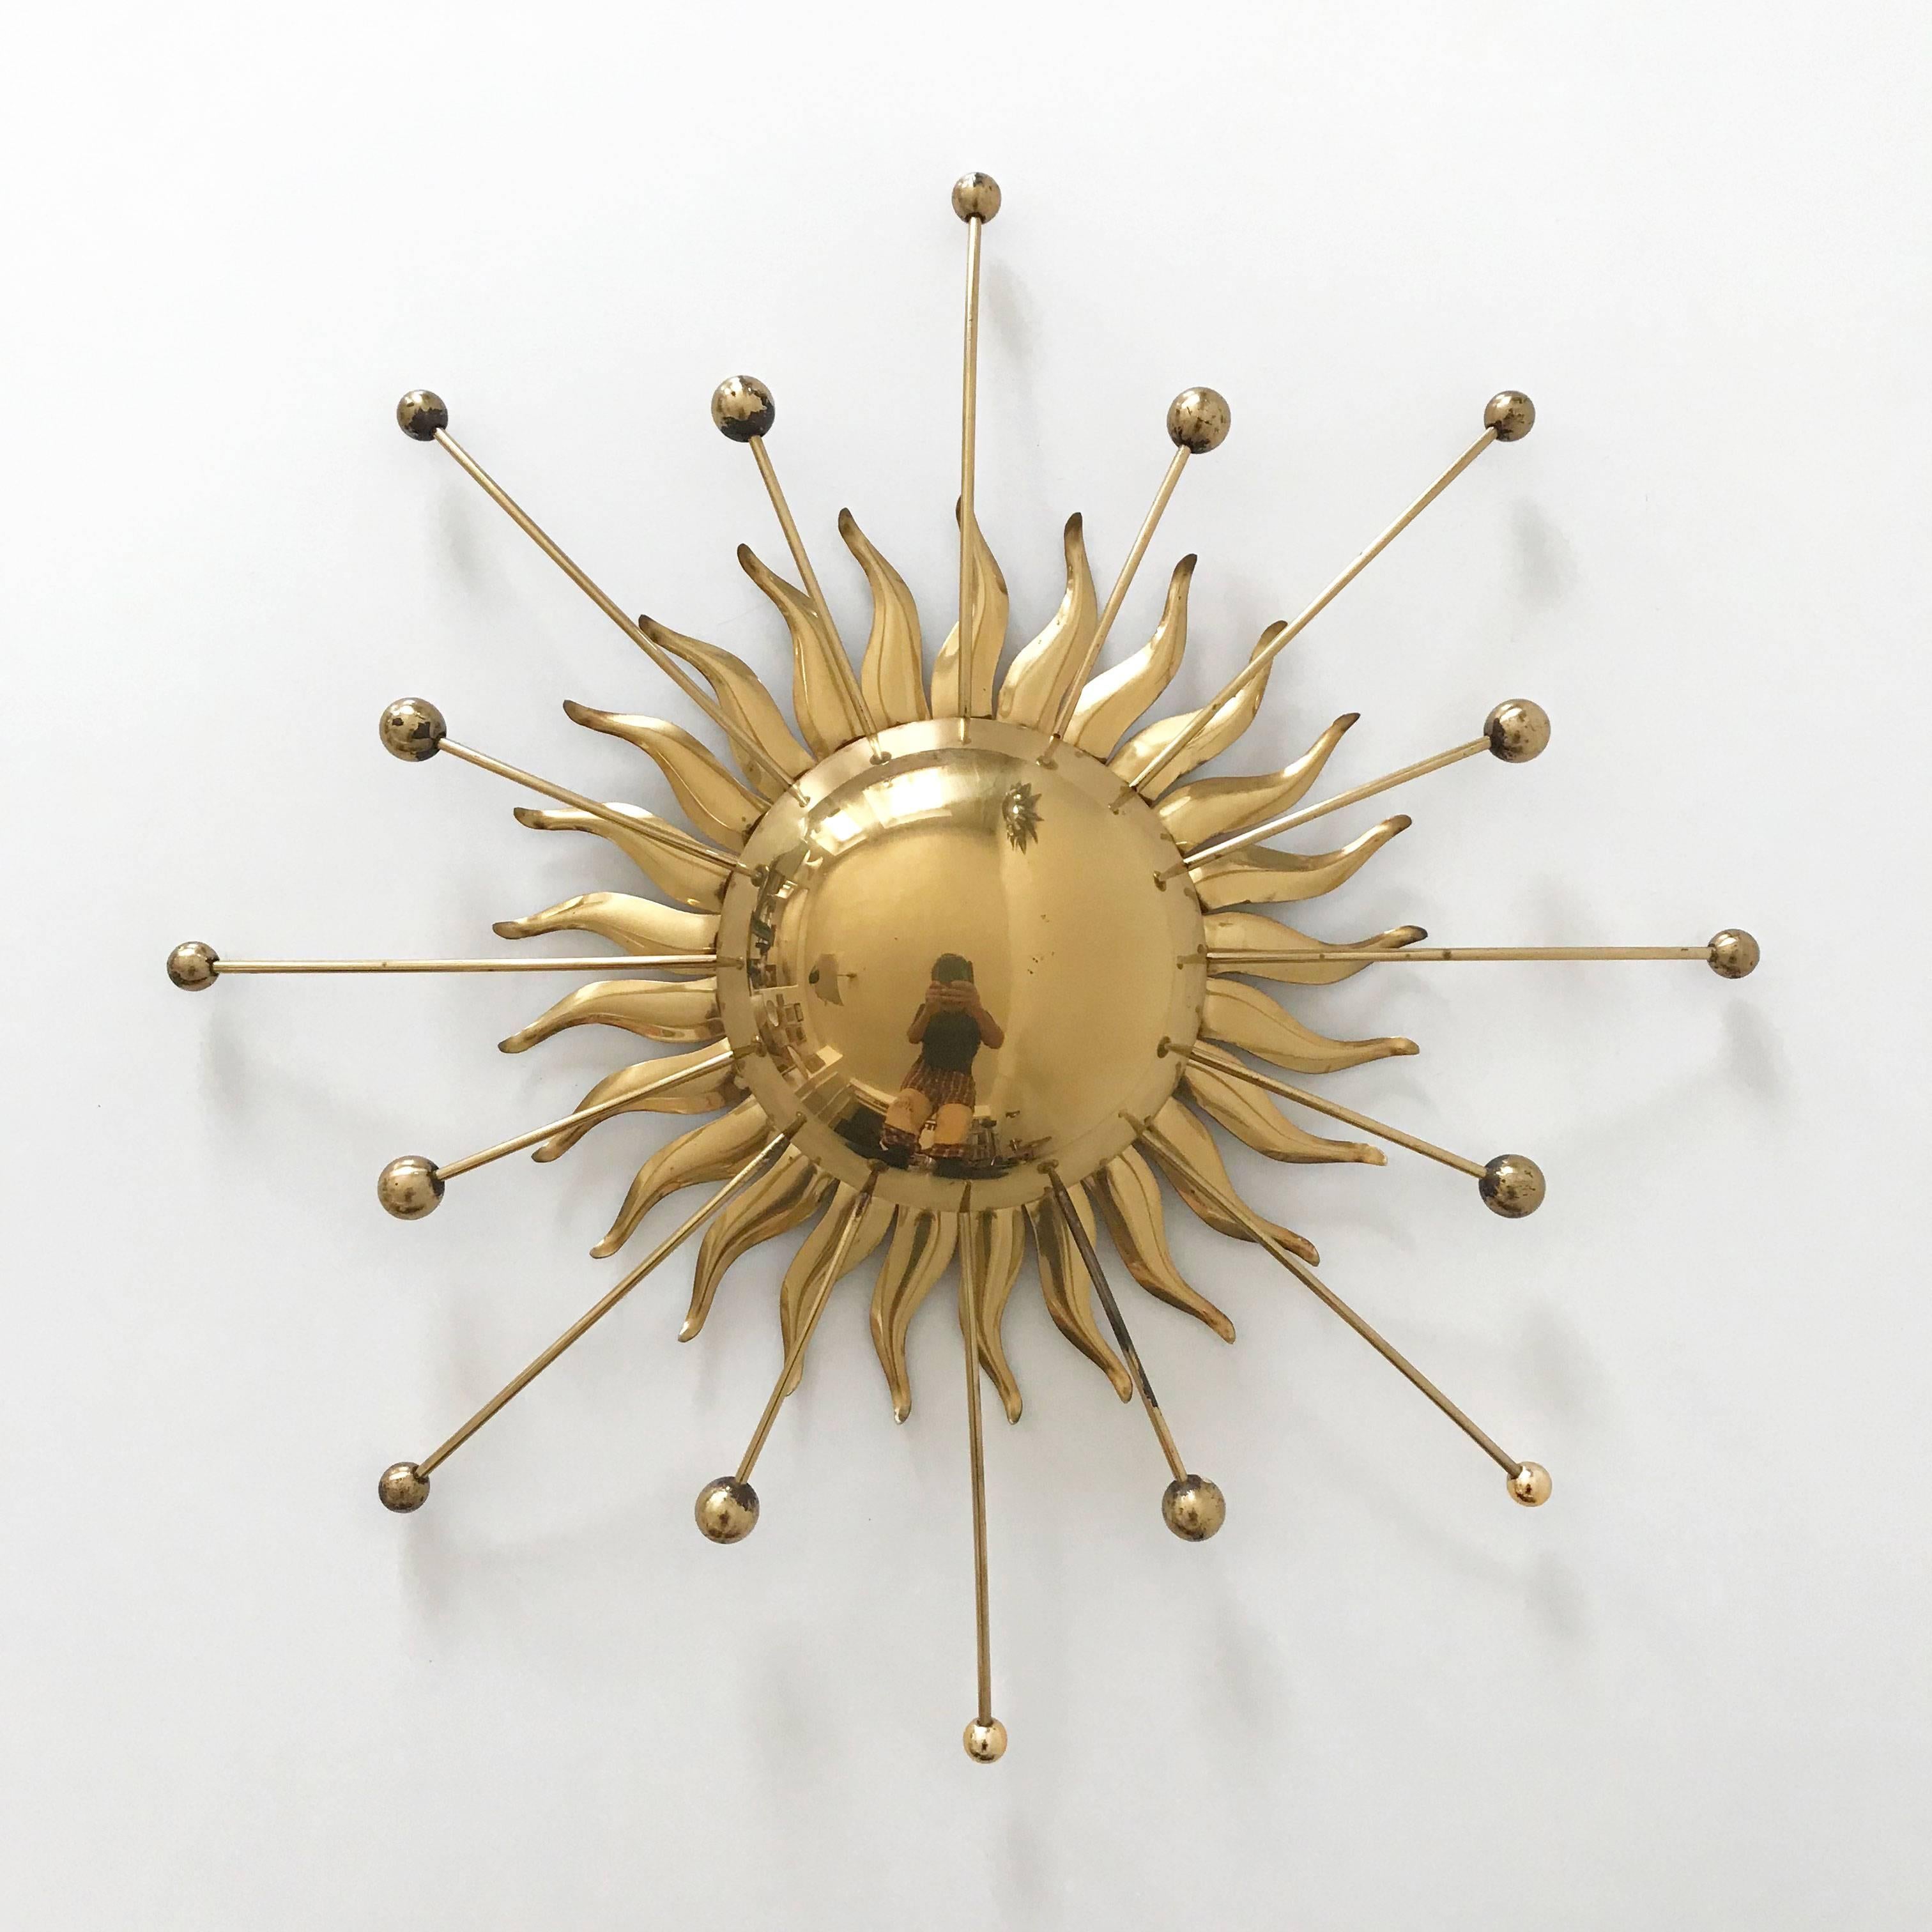 Polished Sputnik Atomic Brass Wall Lamp or Sconce Sunburst, 1960s, Germany